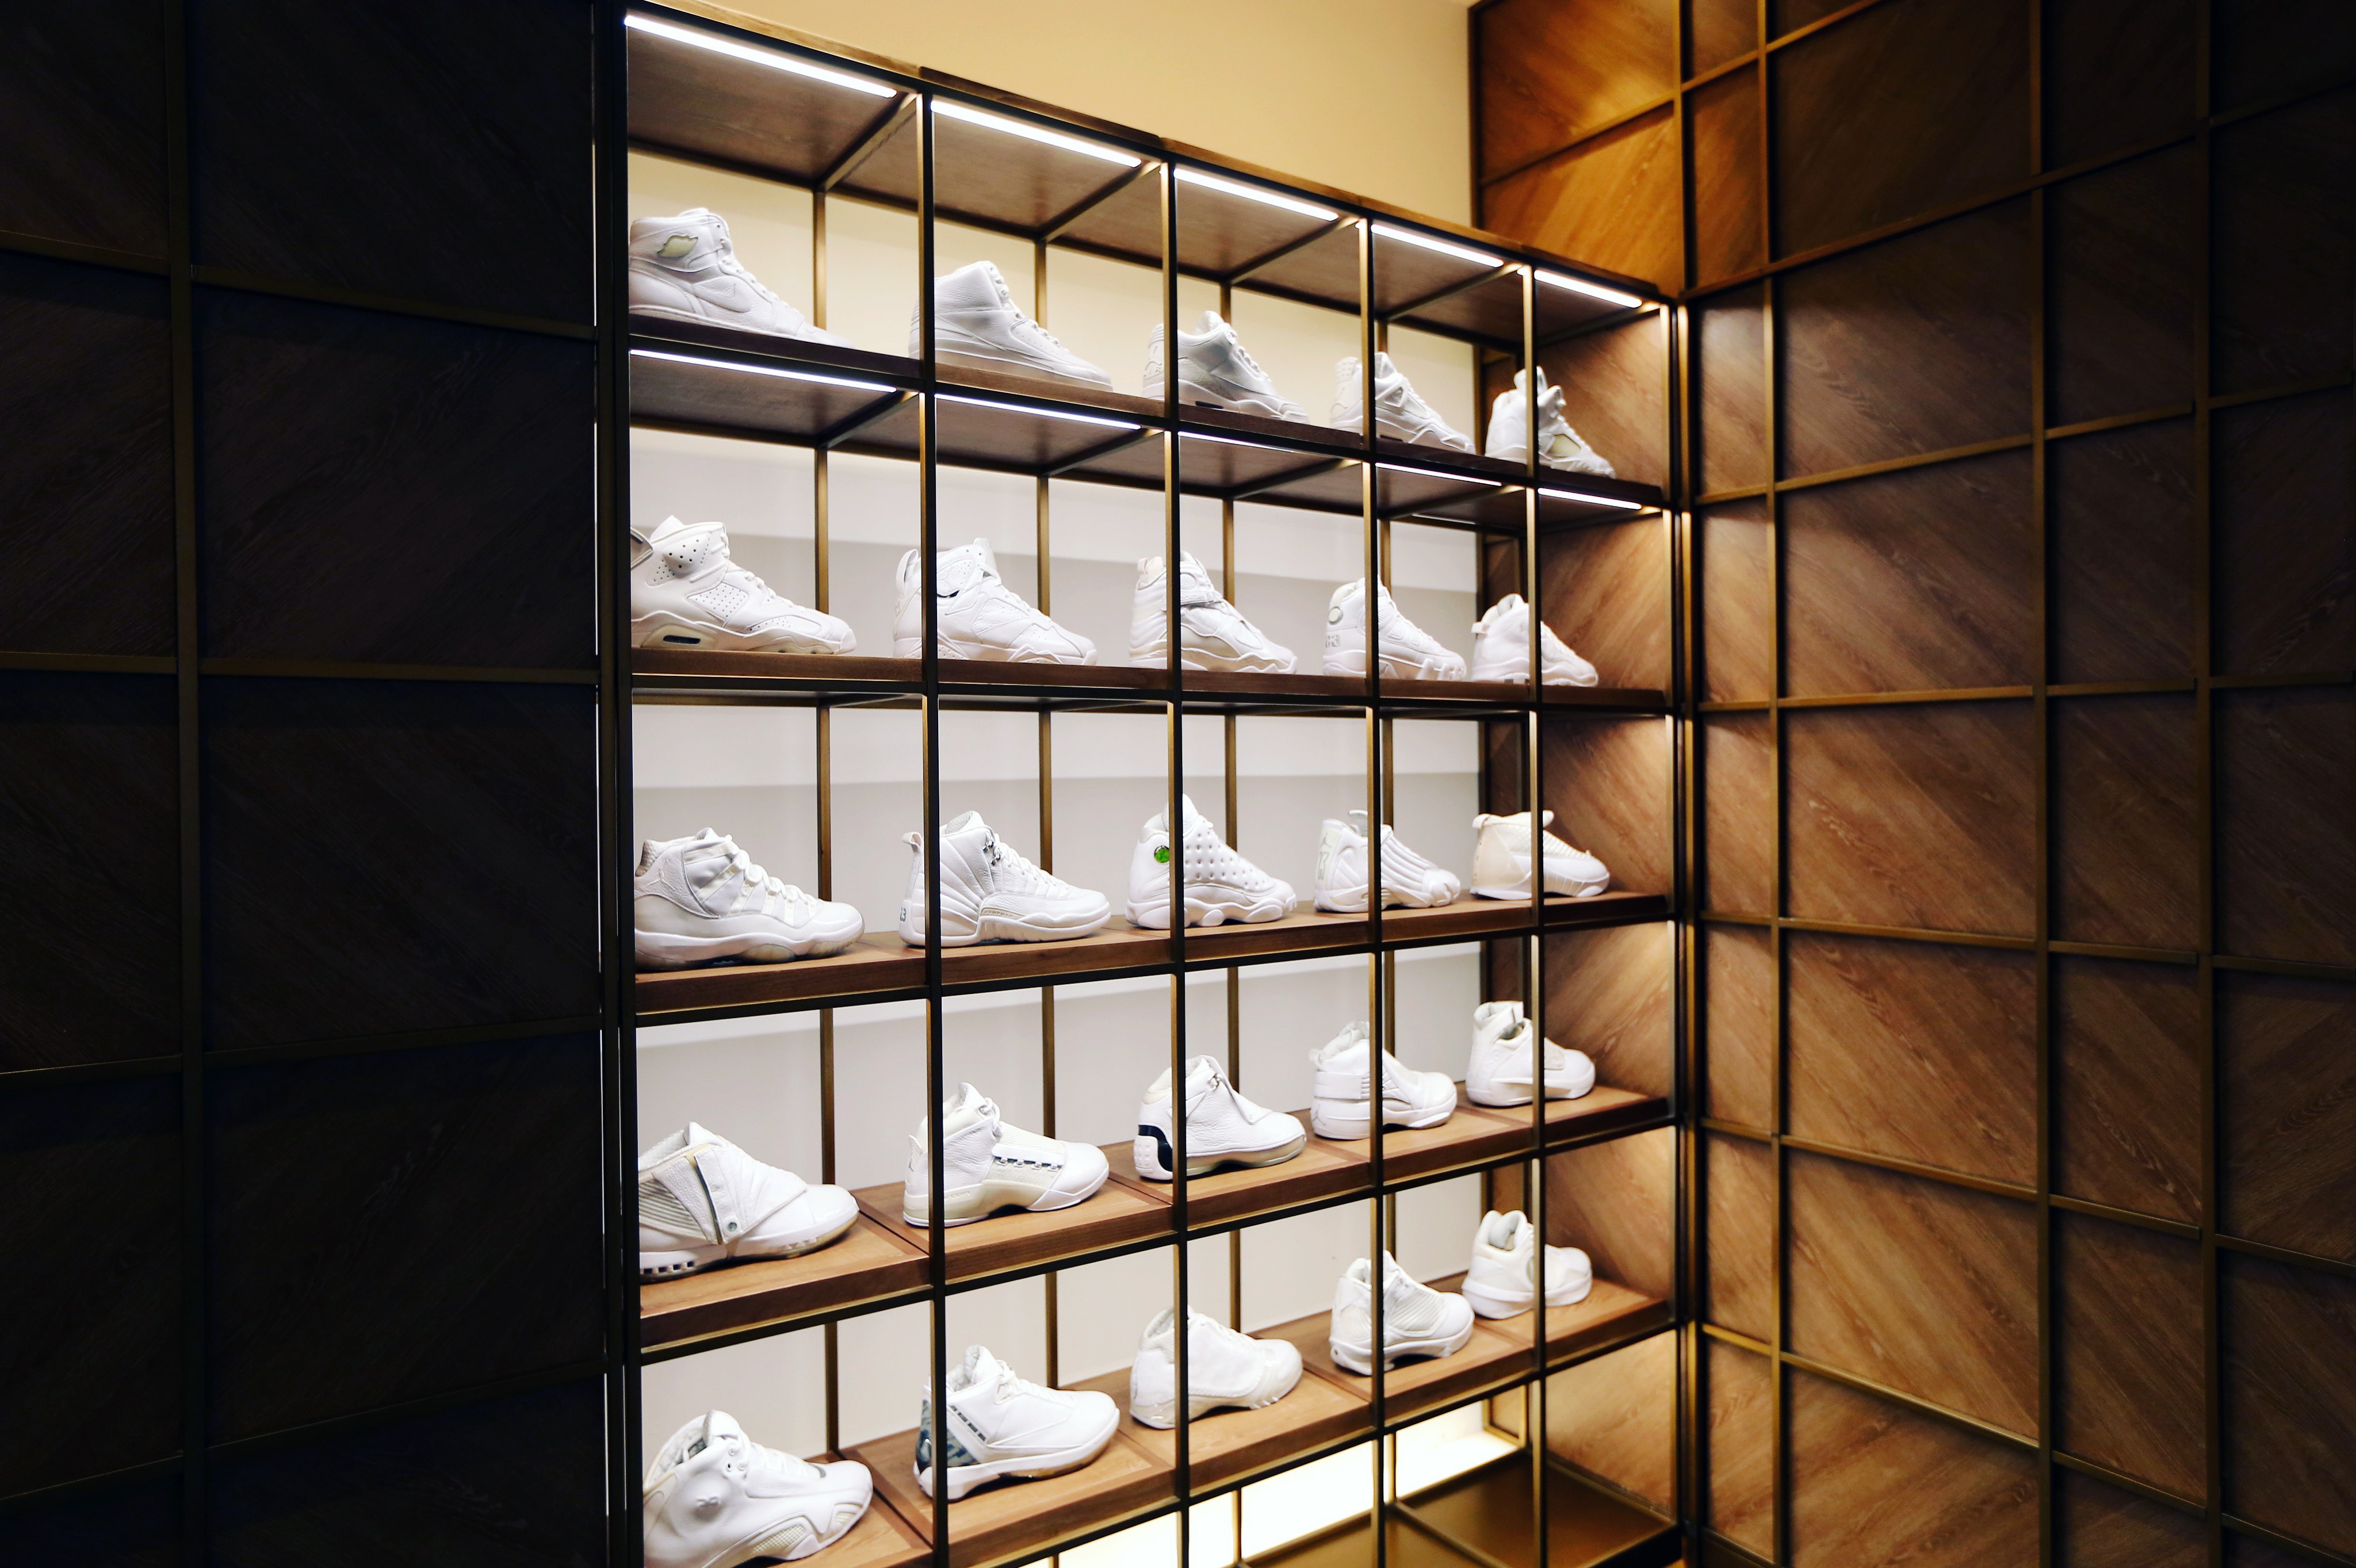 23 Sneaker Shop Beijing